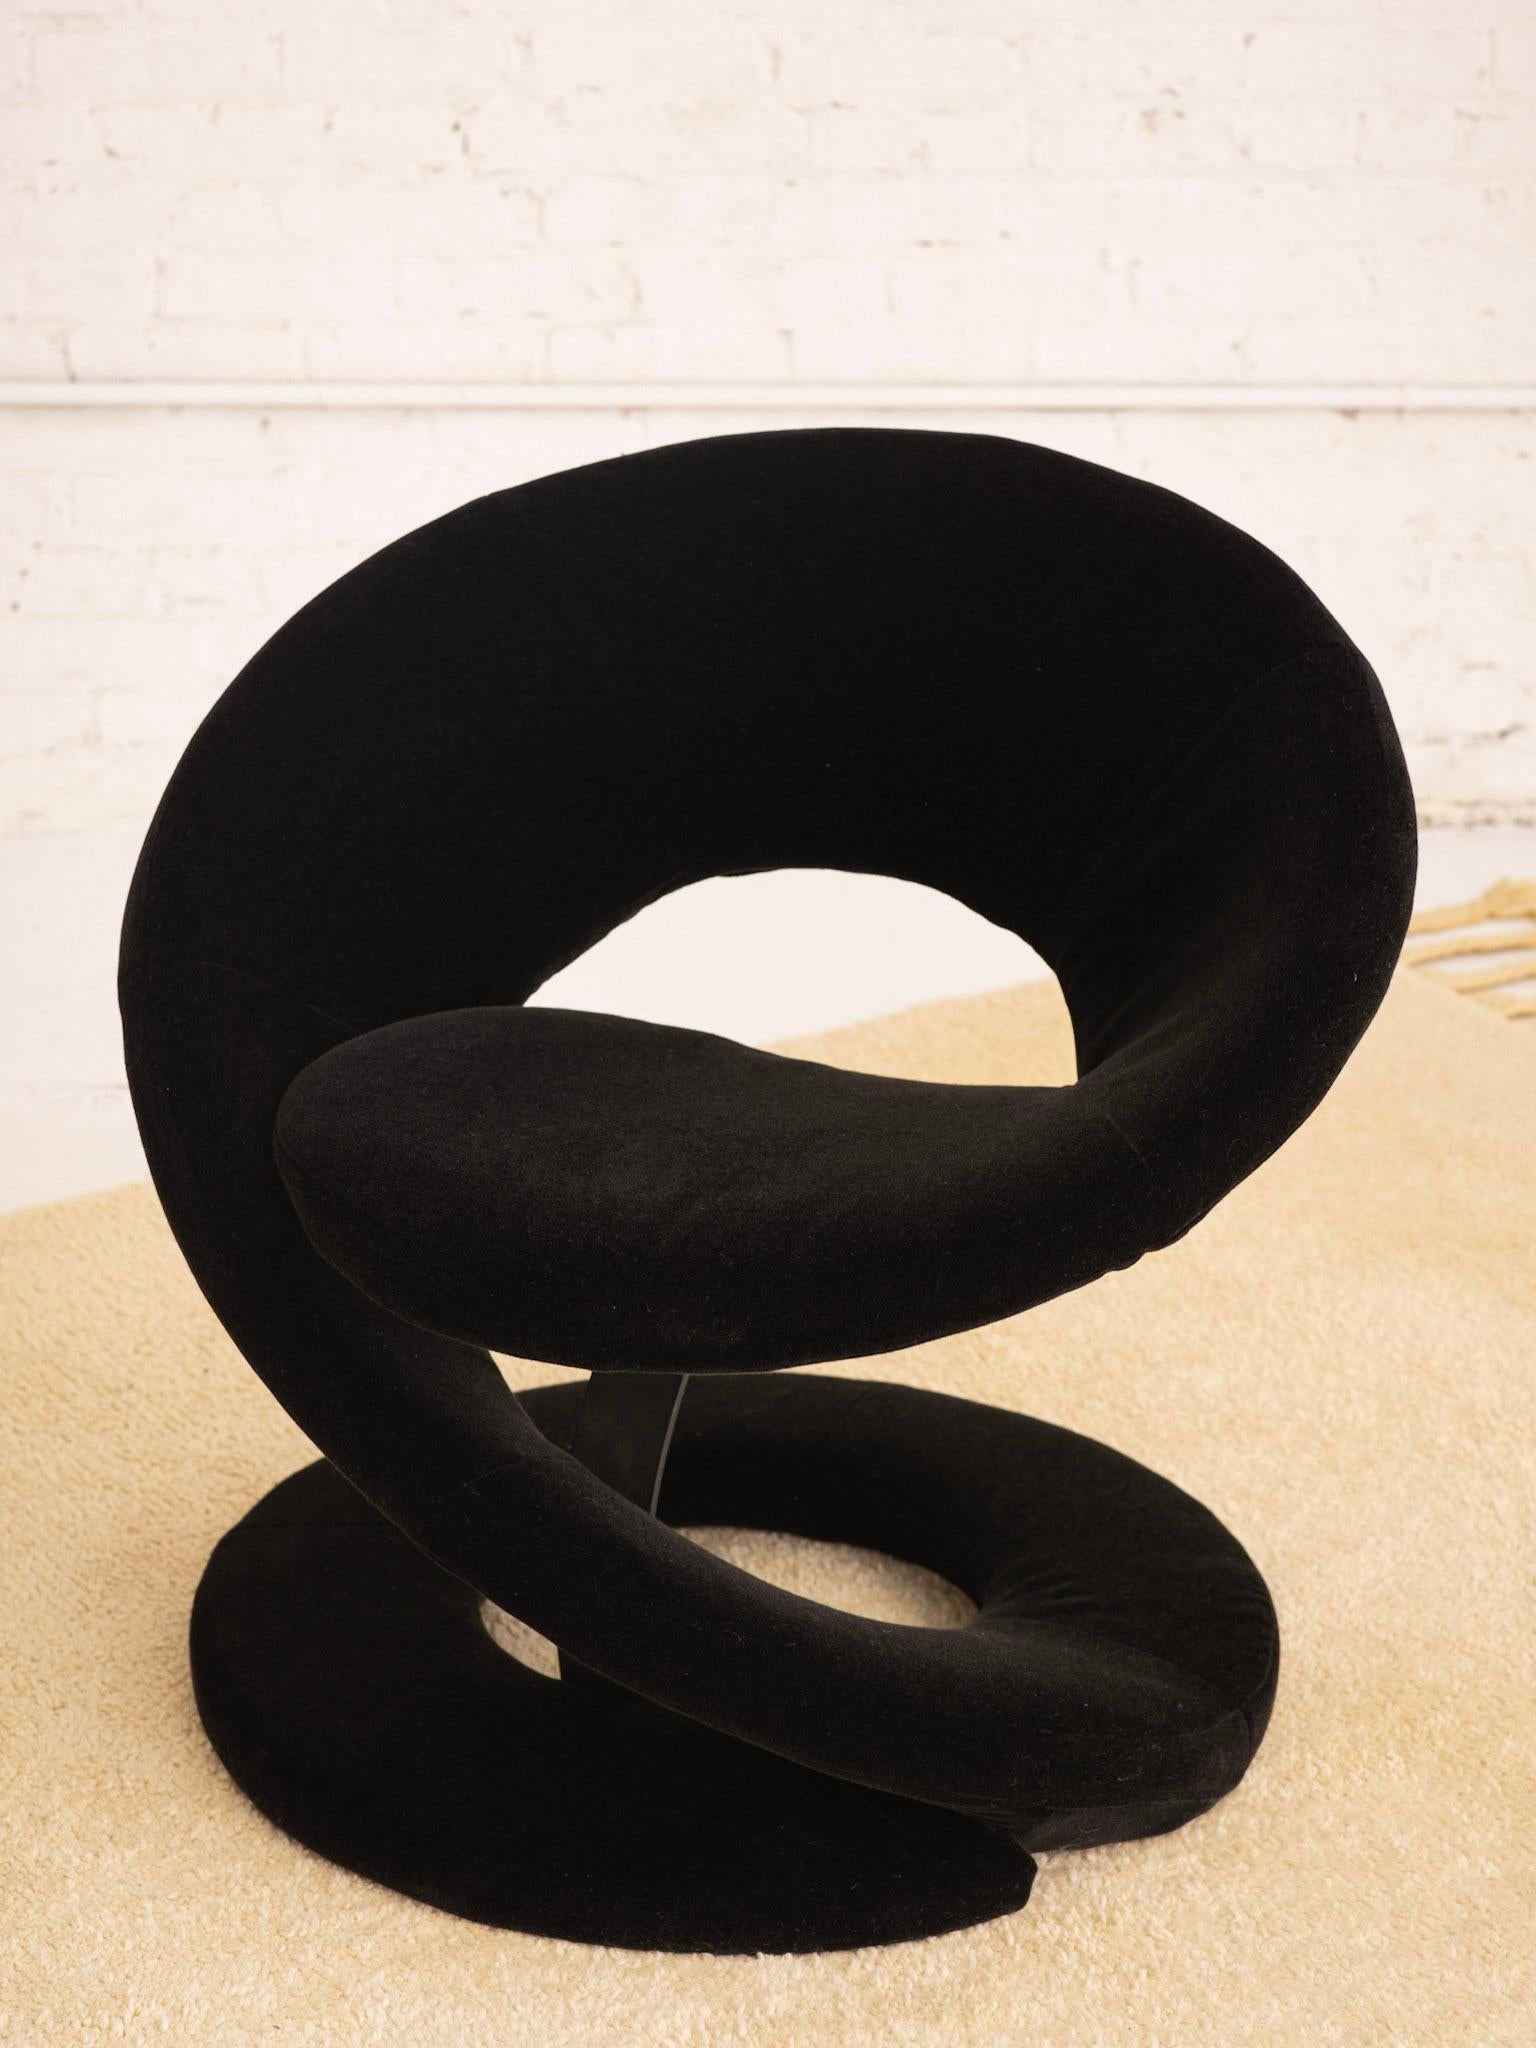 Chaise sculpturale en forme de ruban en spirale. Attribué à 